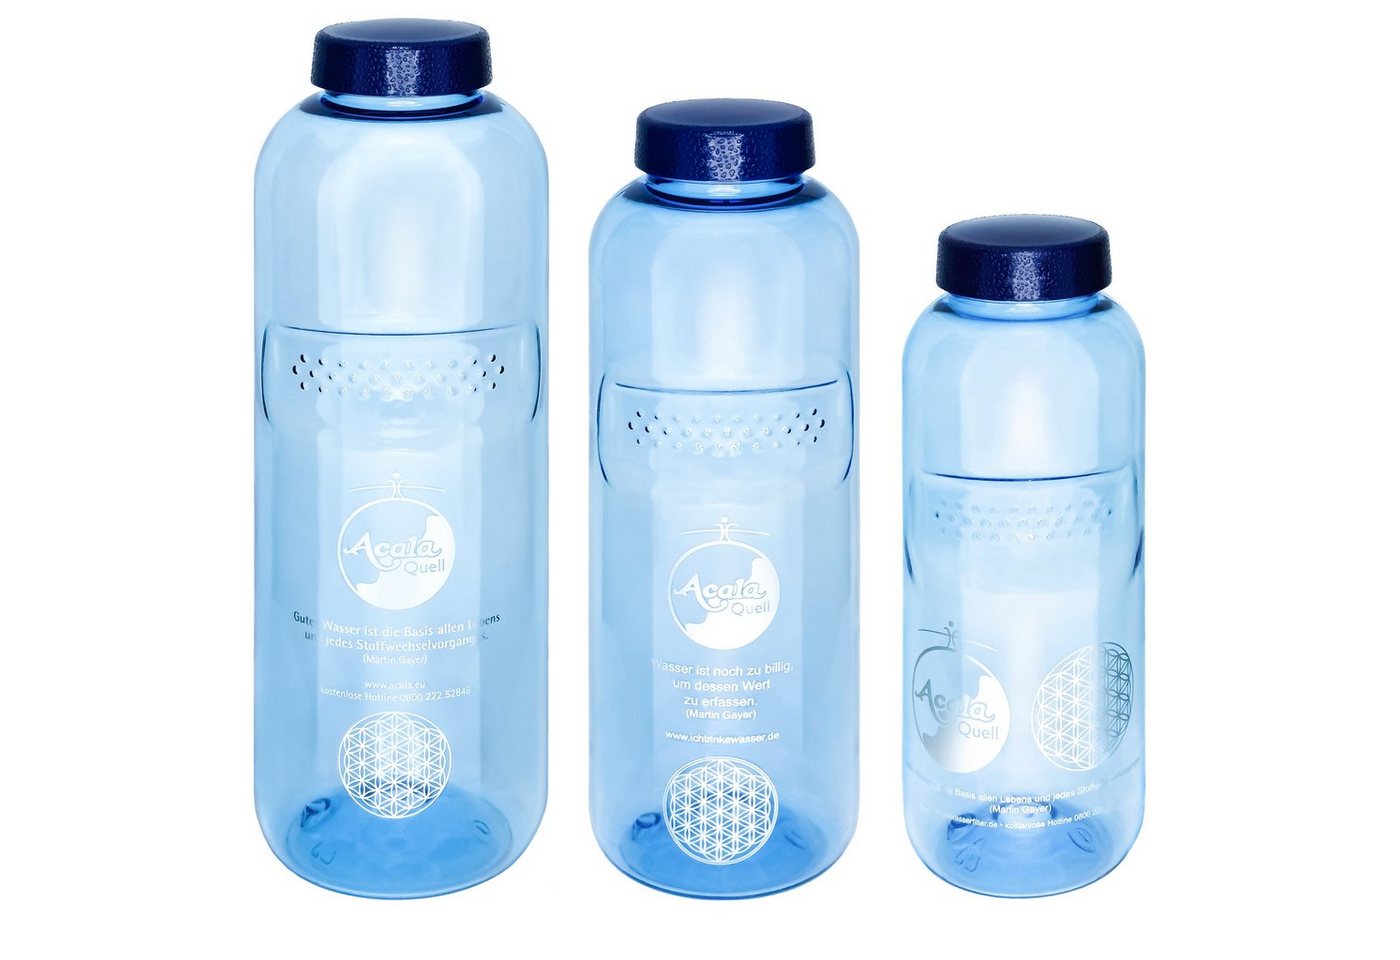 AcalaQuell Trinkflasche Optimal Set Grip, 1x 0,5L, 1x 0,75L, 1x 1,0L, weichmacherfrei & lebensmittelecht von AcalaQuell